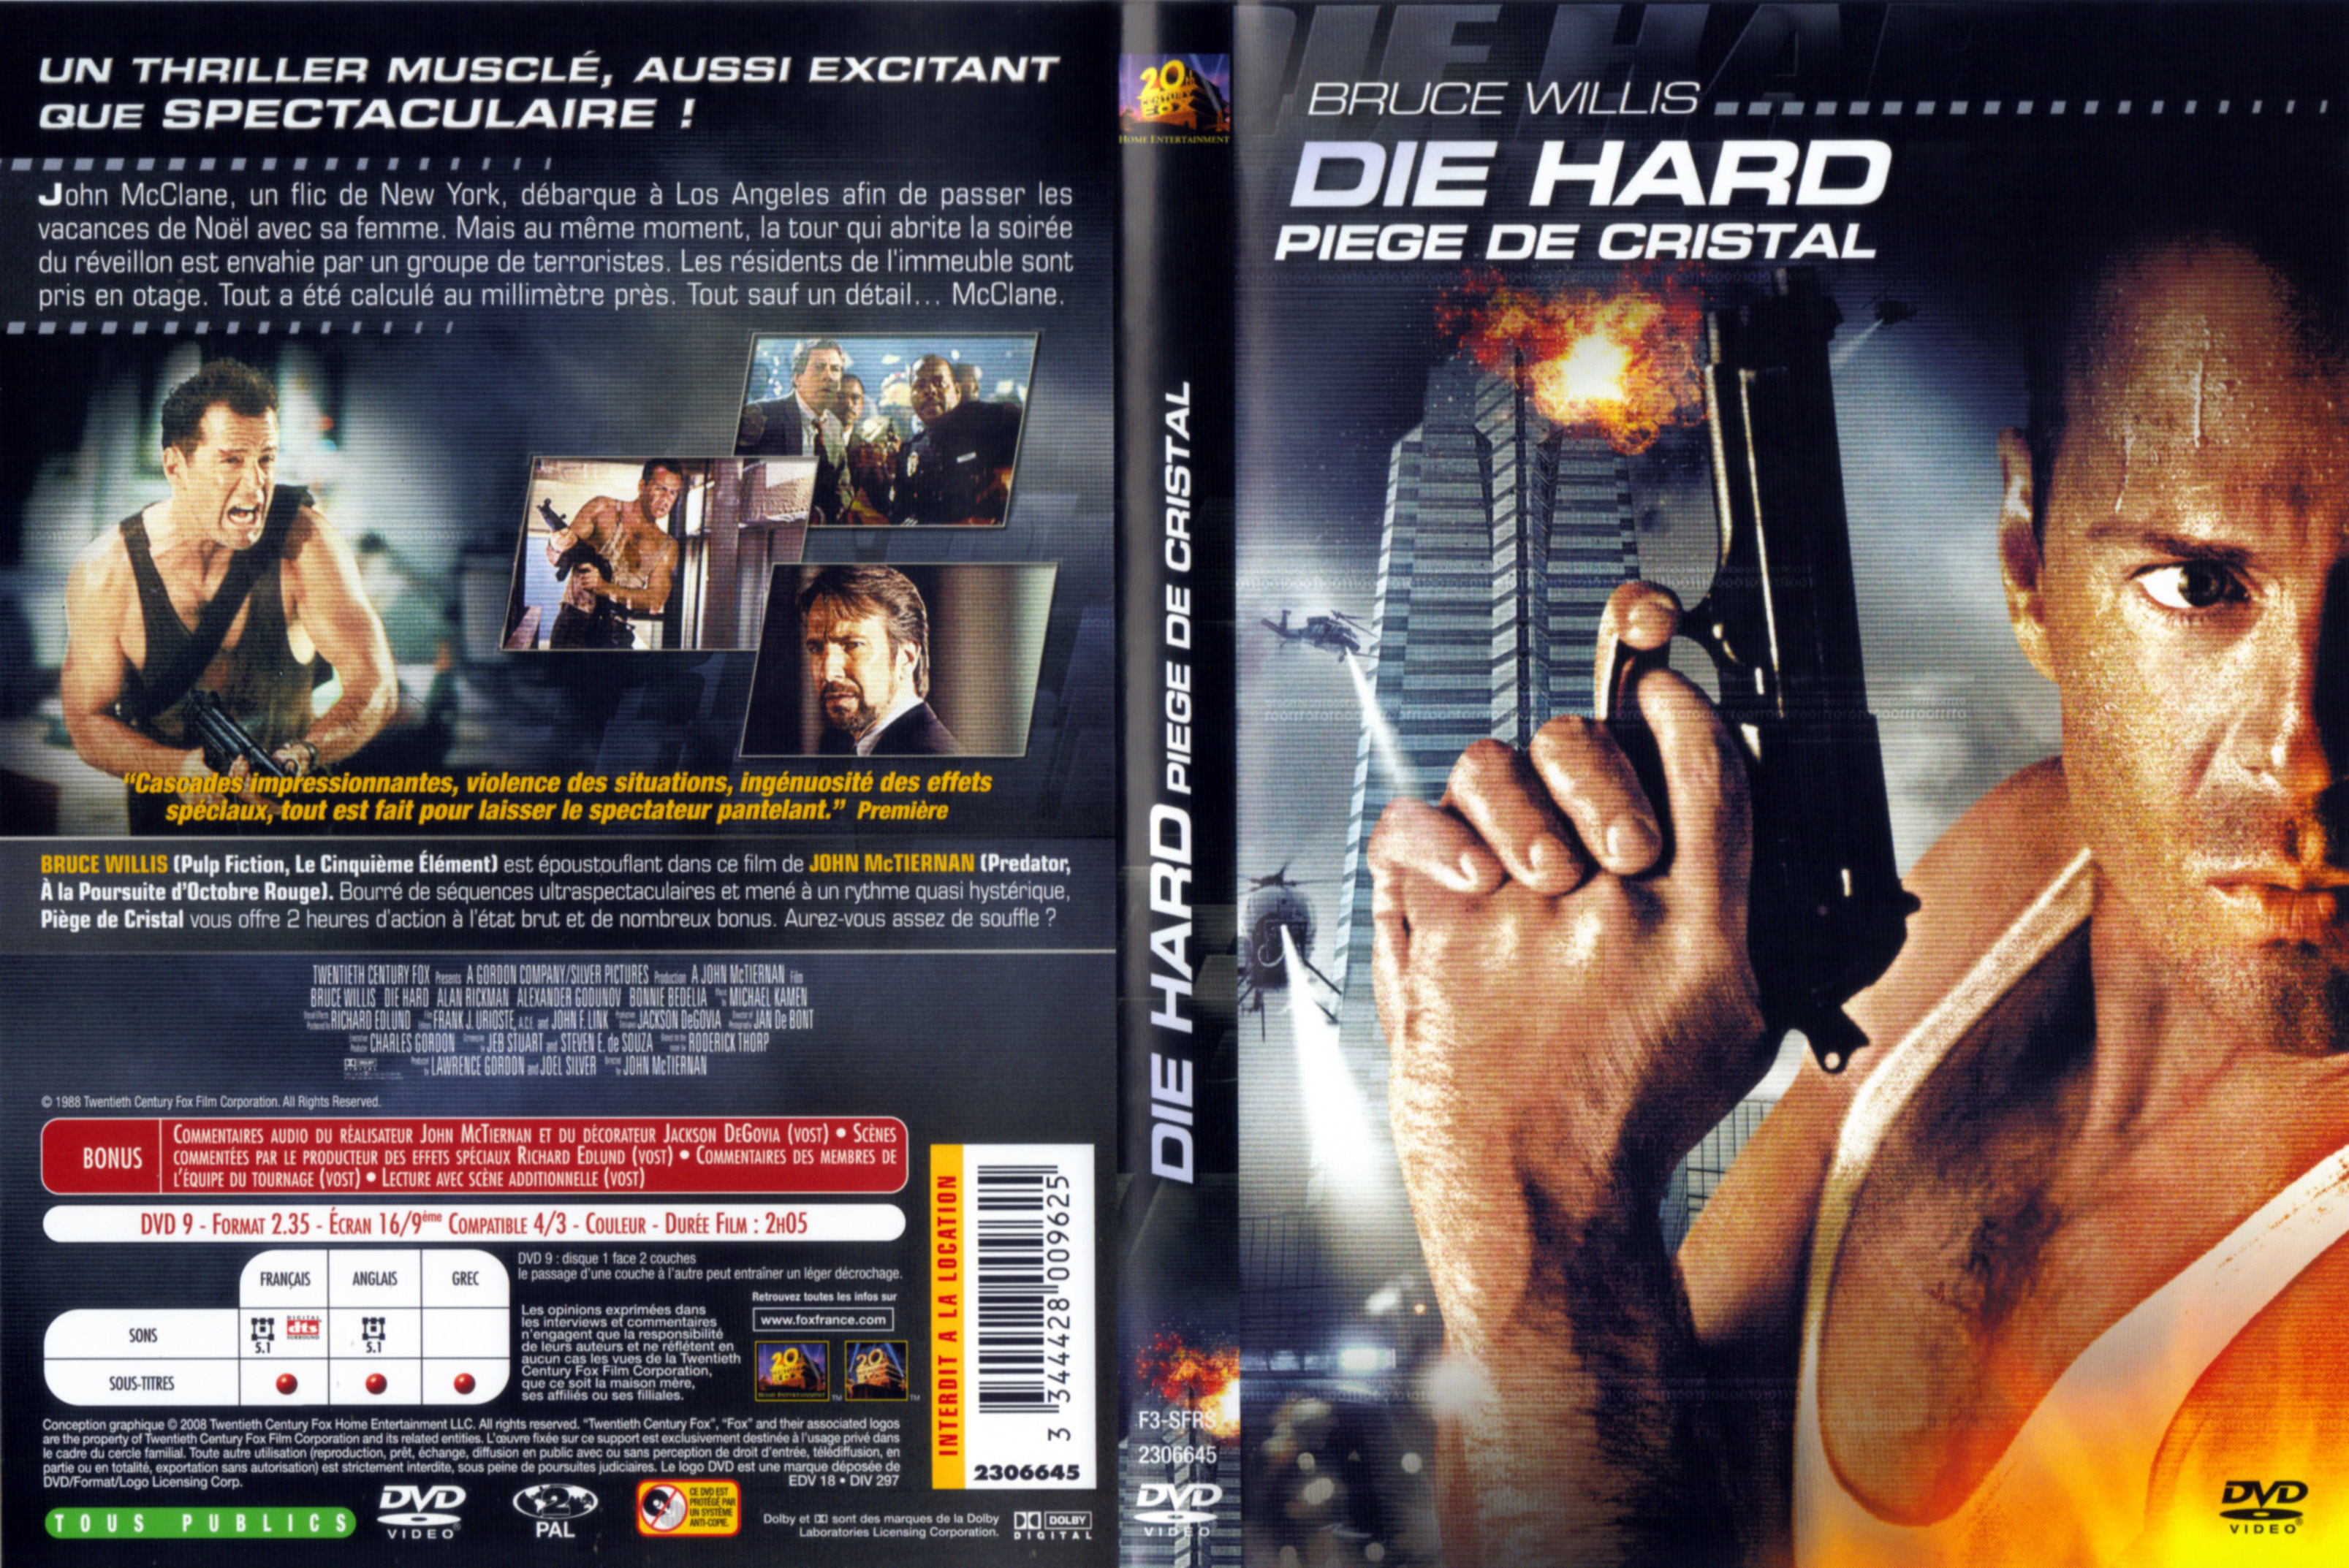 Jaquette DVD Die hard - Pige de cristal v2